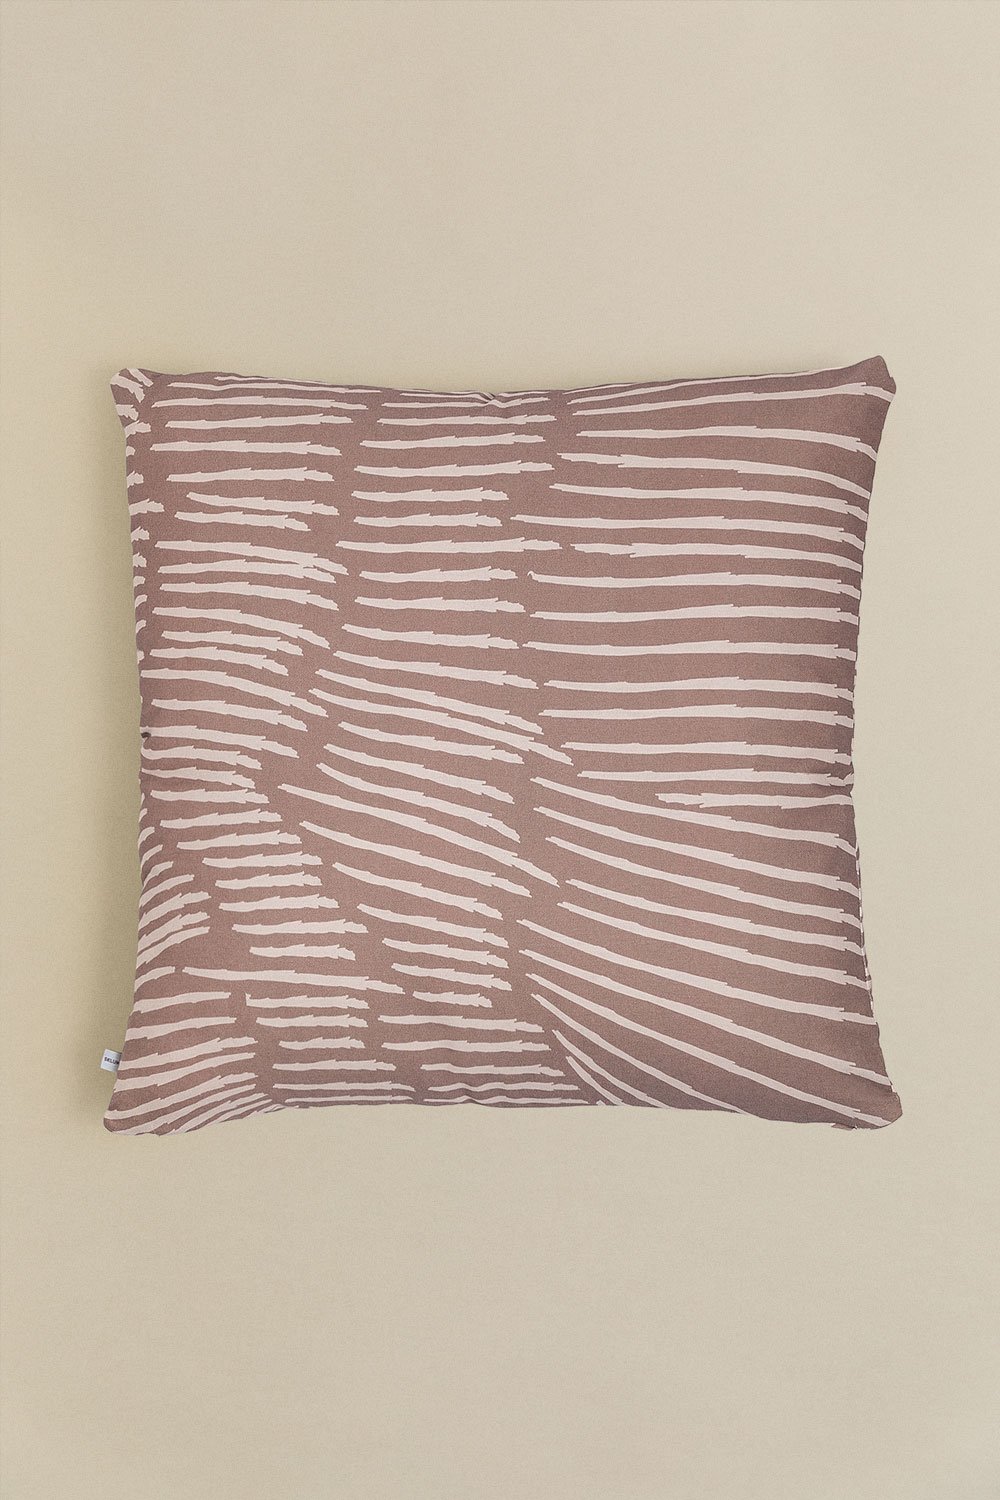 Federa per cuscino quadrata in cotone (60x60 cm) Ubongo Style, immagine della galleria 1